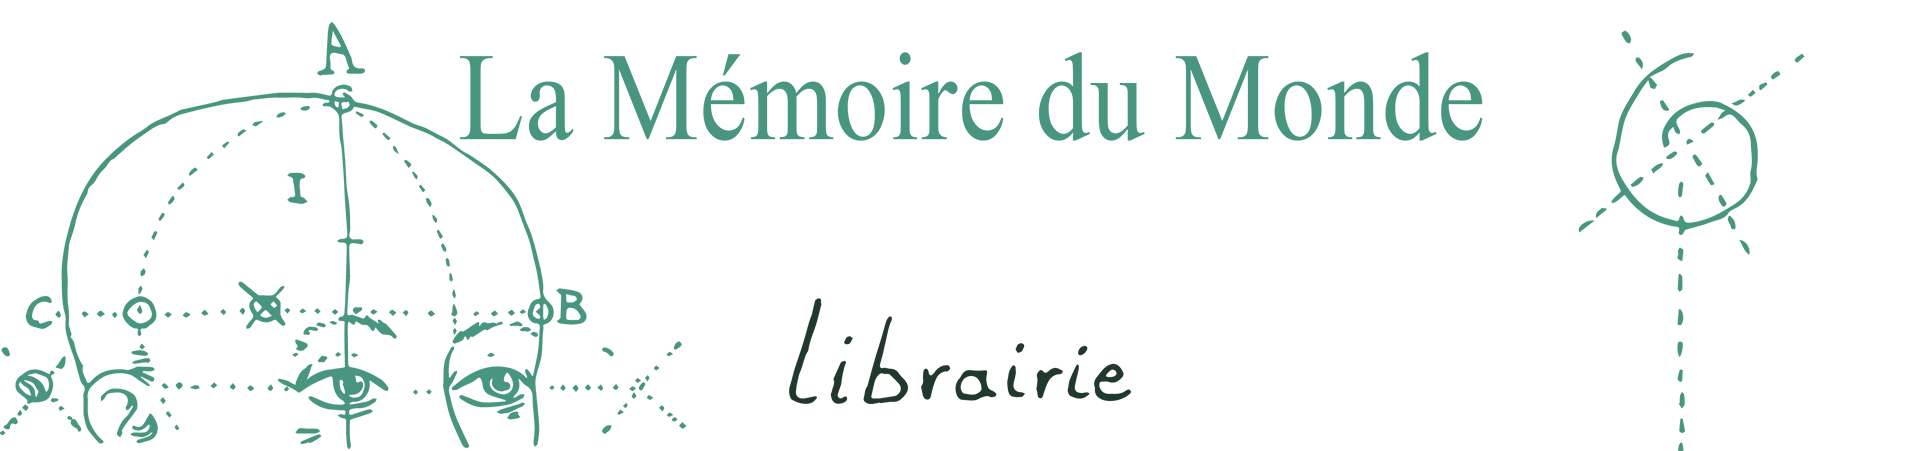 Librairie La Mémoire du Monde